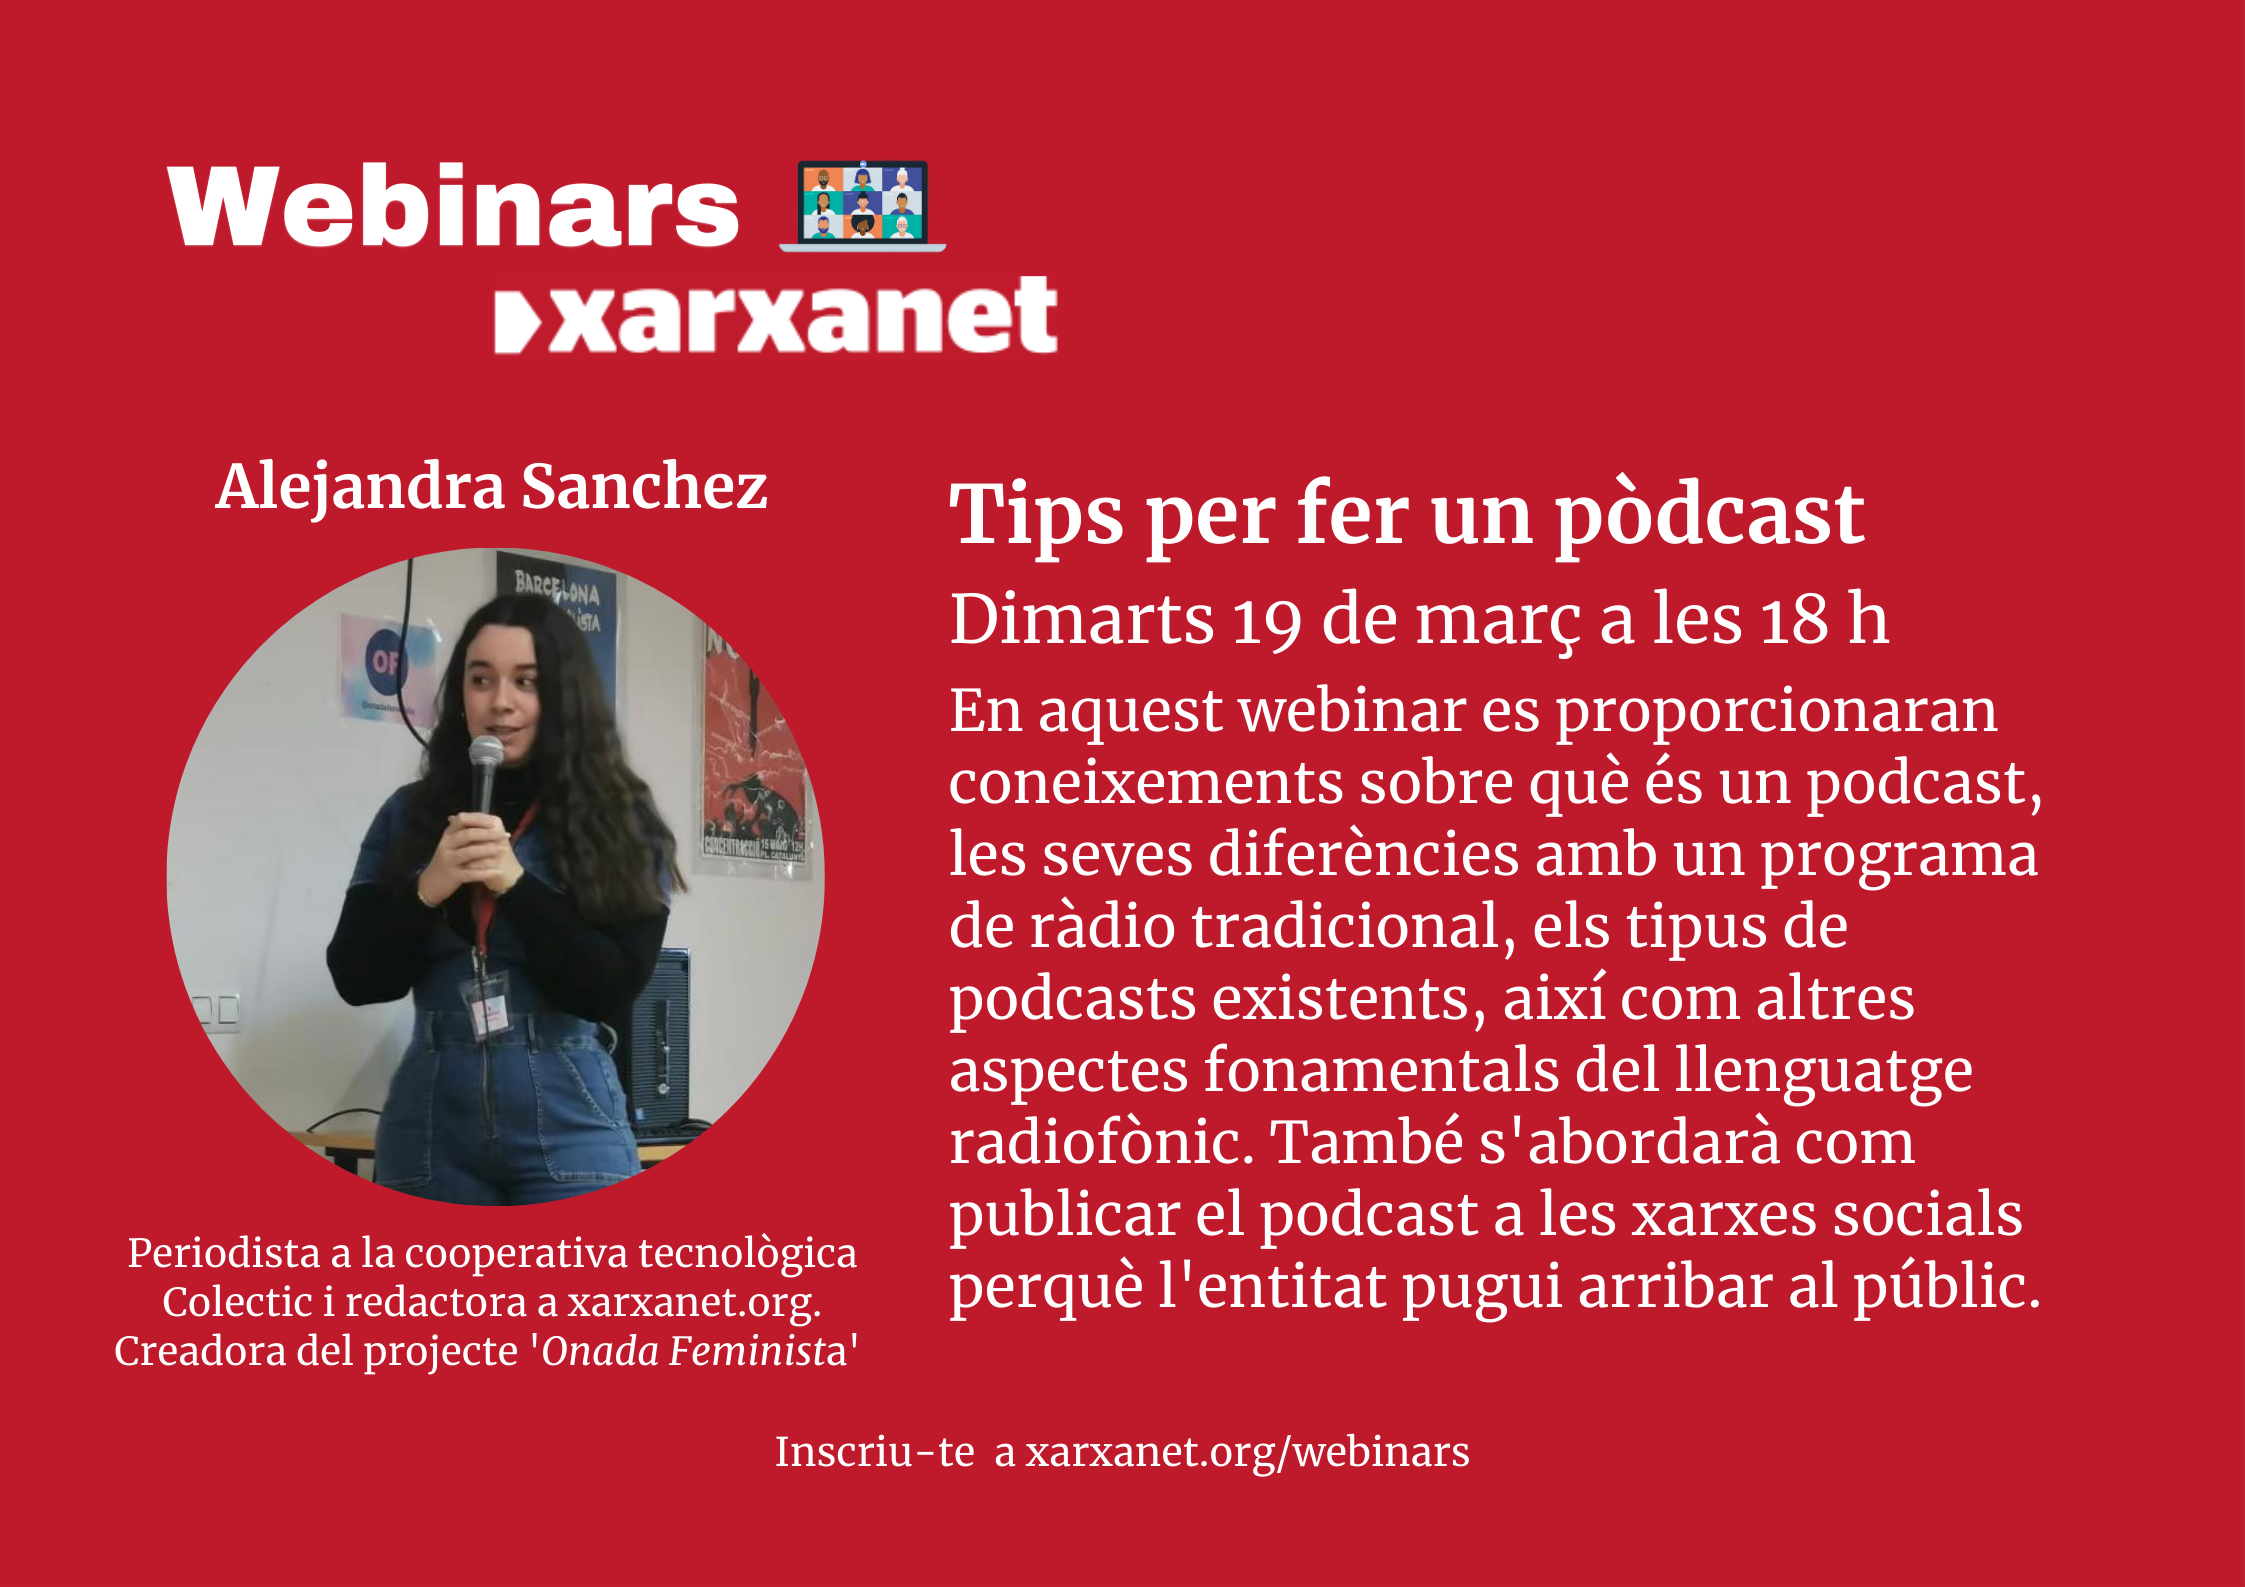 Alejandra Sánchez, periodista a la cooperativa tecnològica Colectic i redactora a xarxanet.org. Creadora del projecte 'Onada Feminista'.